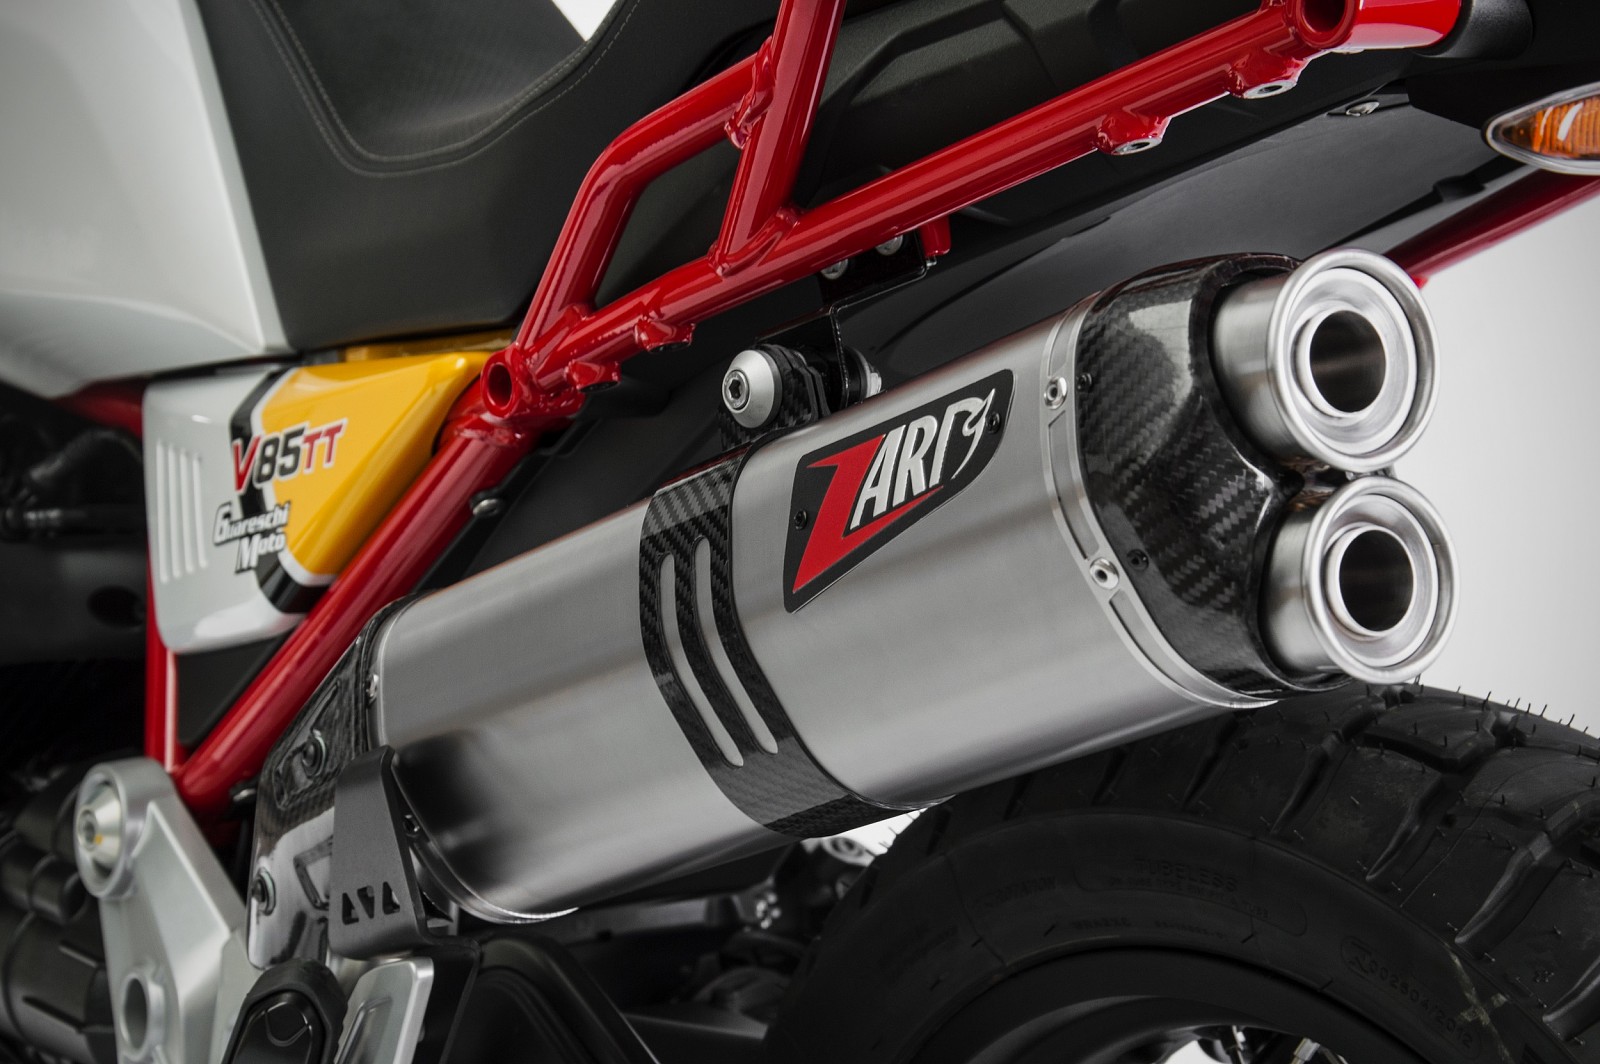  Moto Guzzi V85 TT Bj. 2019-2020 Euro 4 